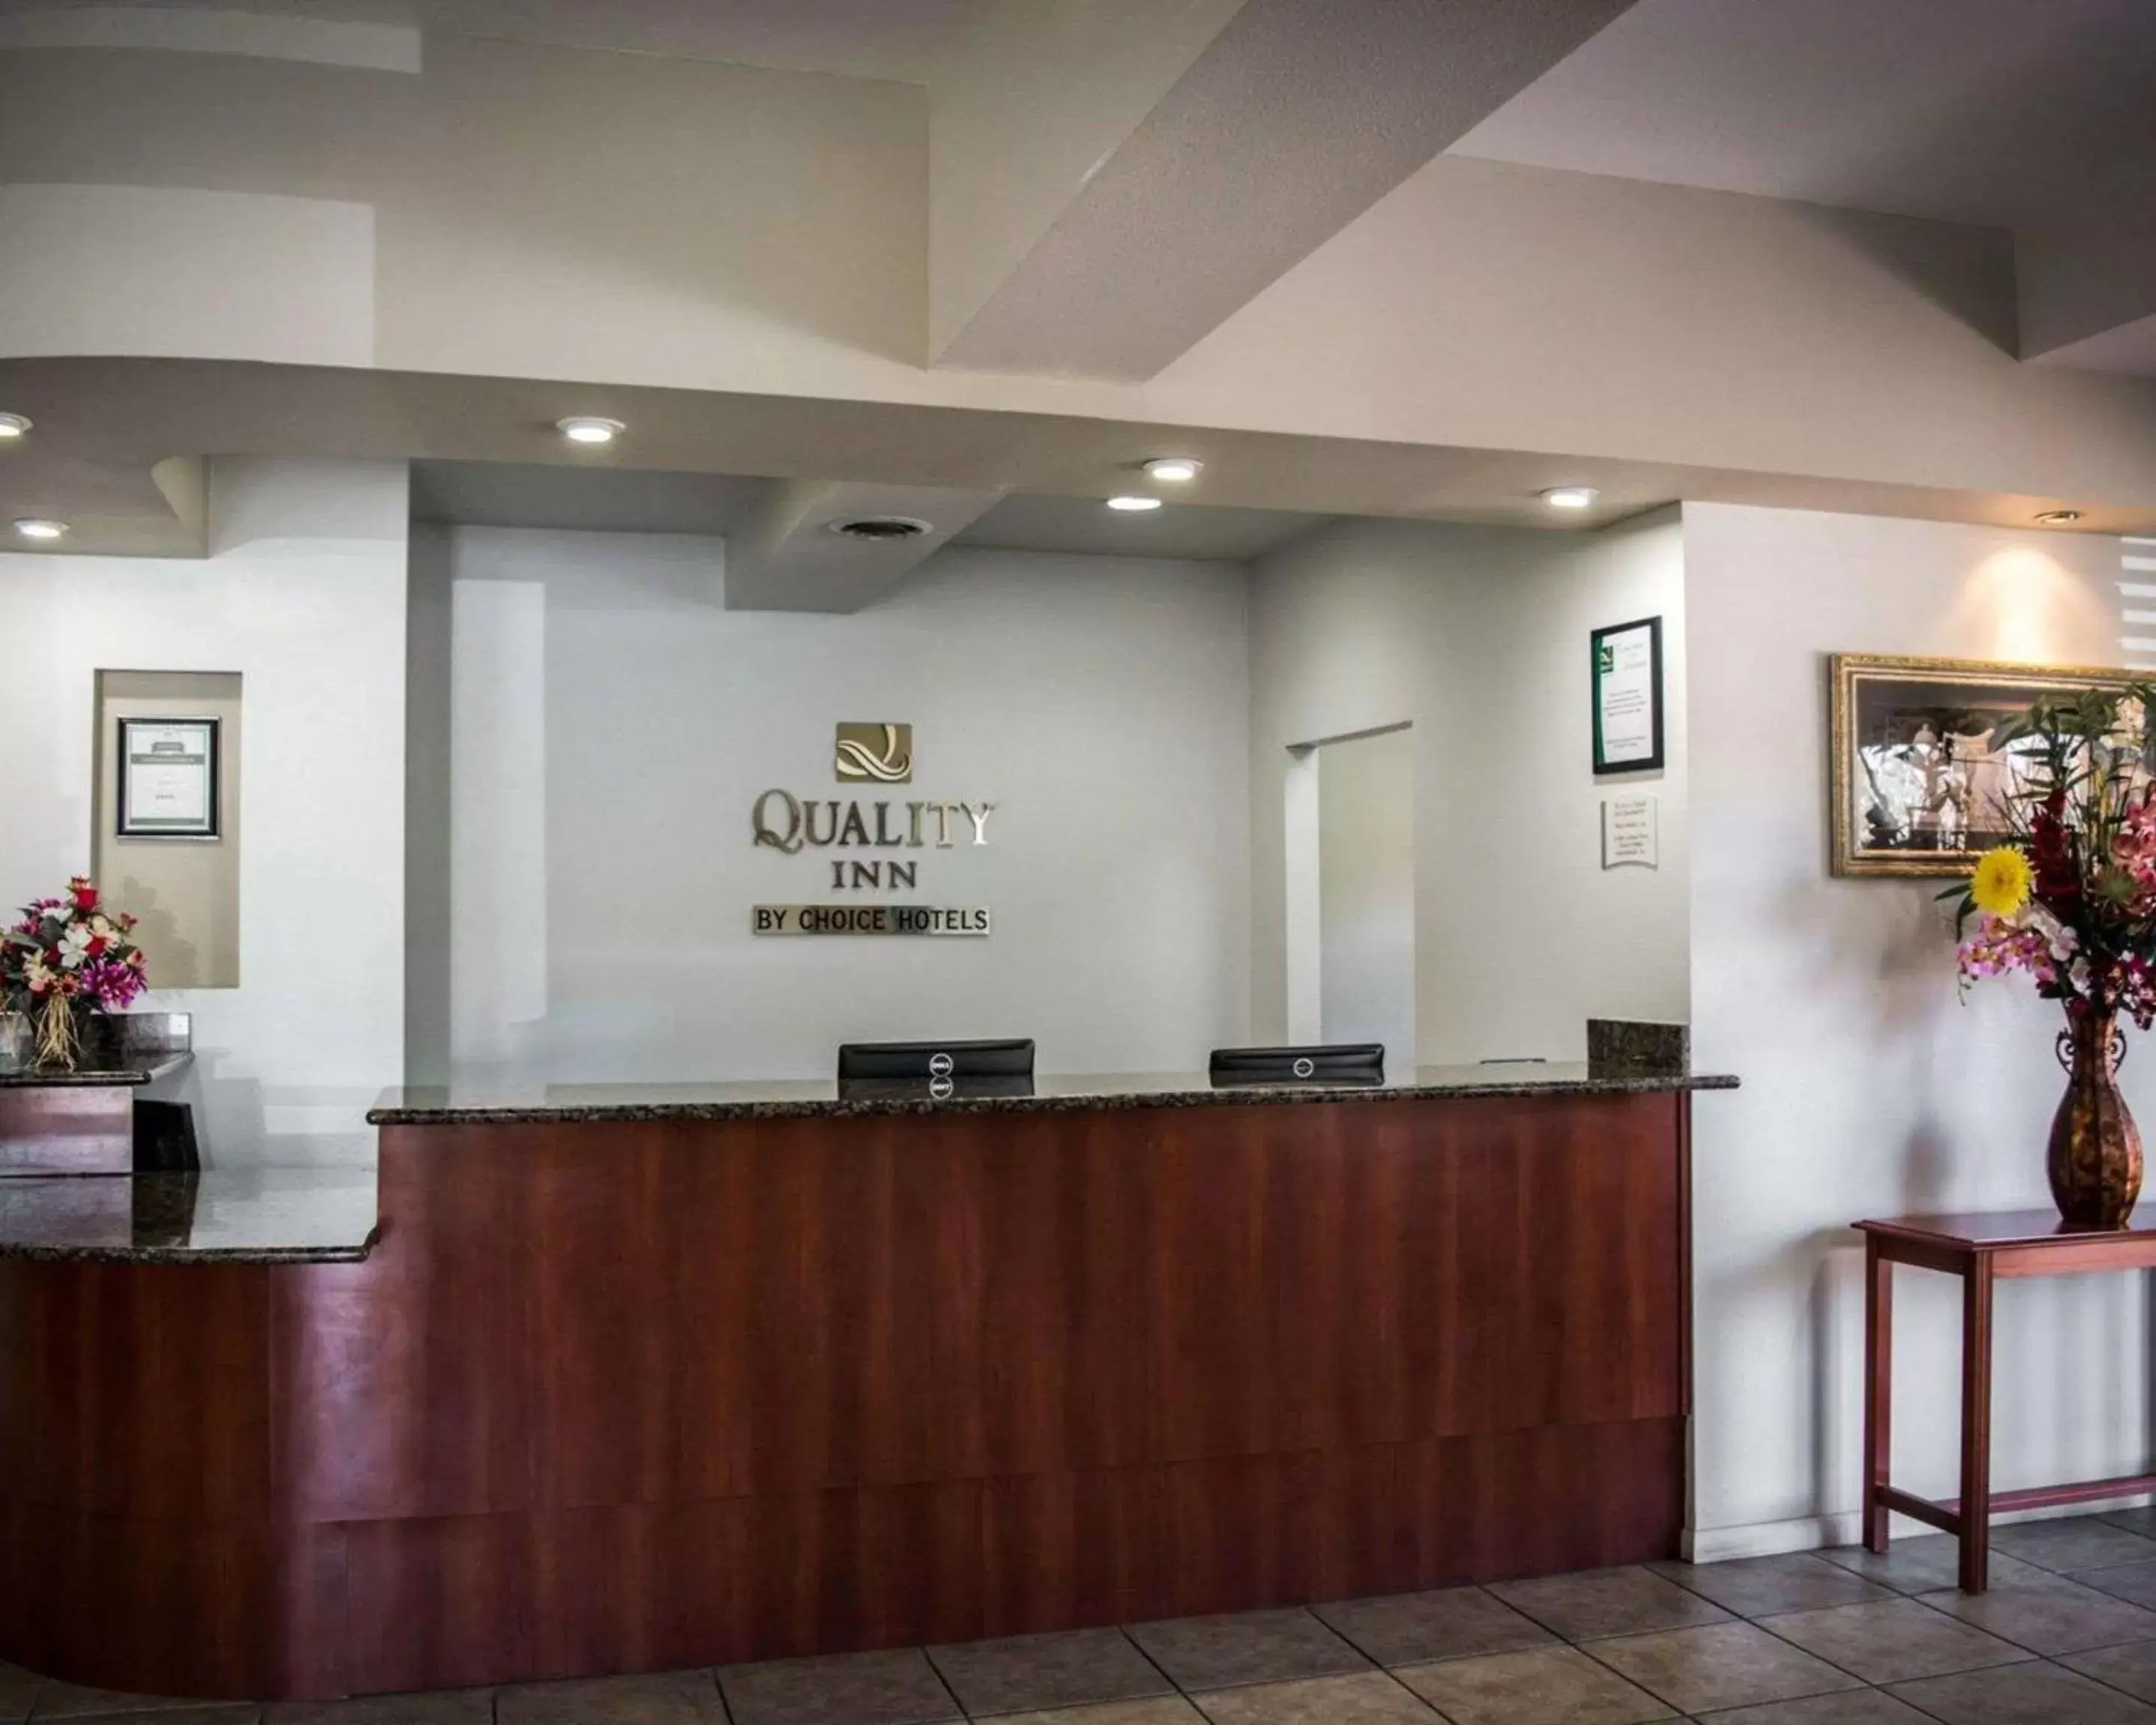 Lobby or reception, Lobby/Reception in Quality Inn - Weeki Wachee